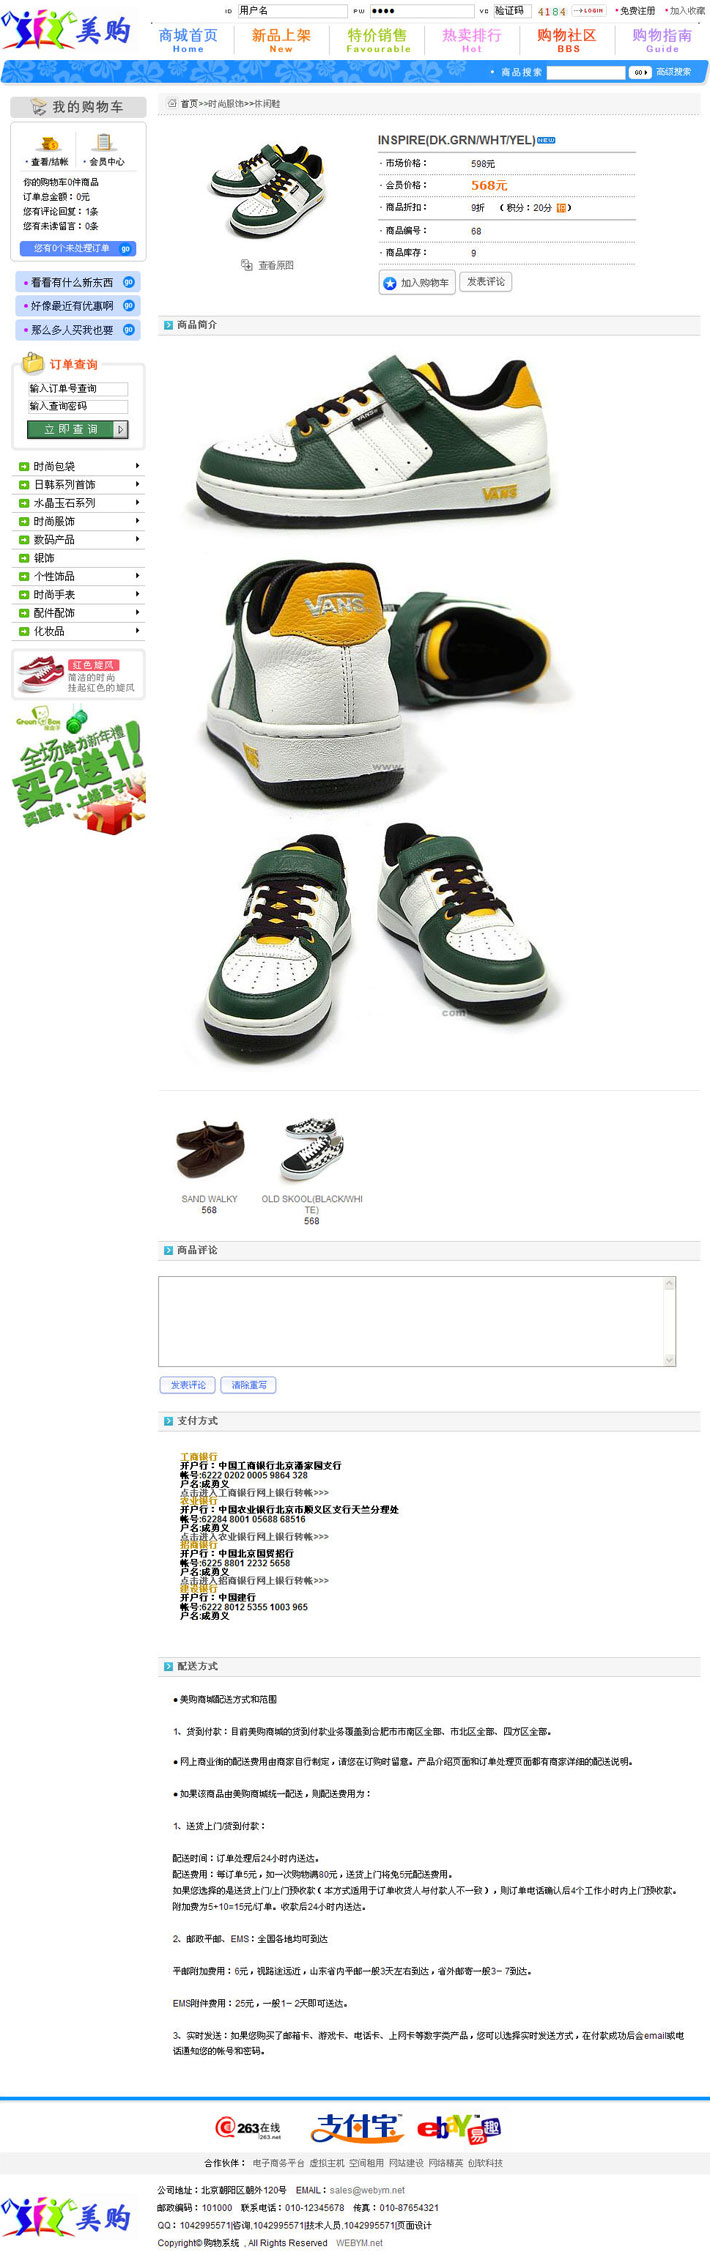 鞋子购物网站大图二